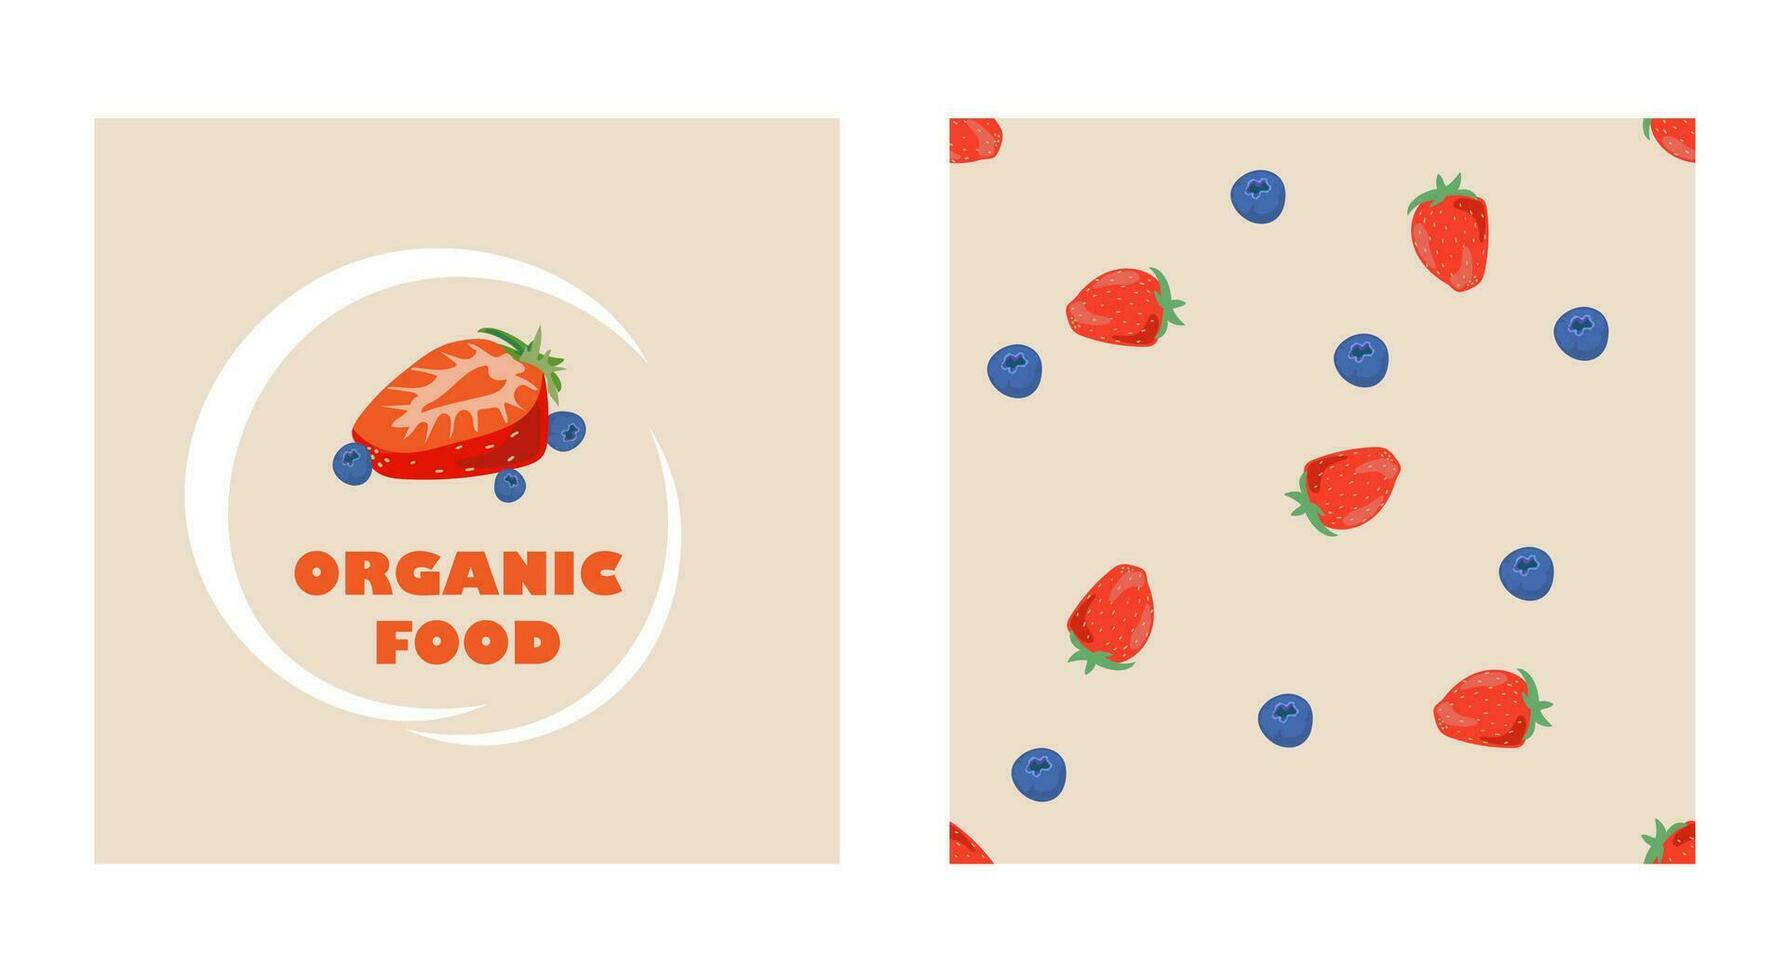 vektor företag uppsättning mall jordgubbar och blåbär med 2 alternativ. restaurang eller organisk kosmetika, tvål och skönhet Produkter branding element.